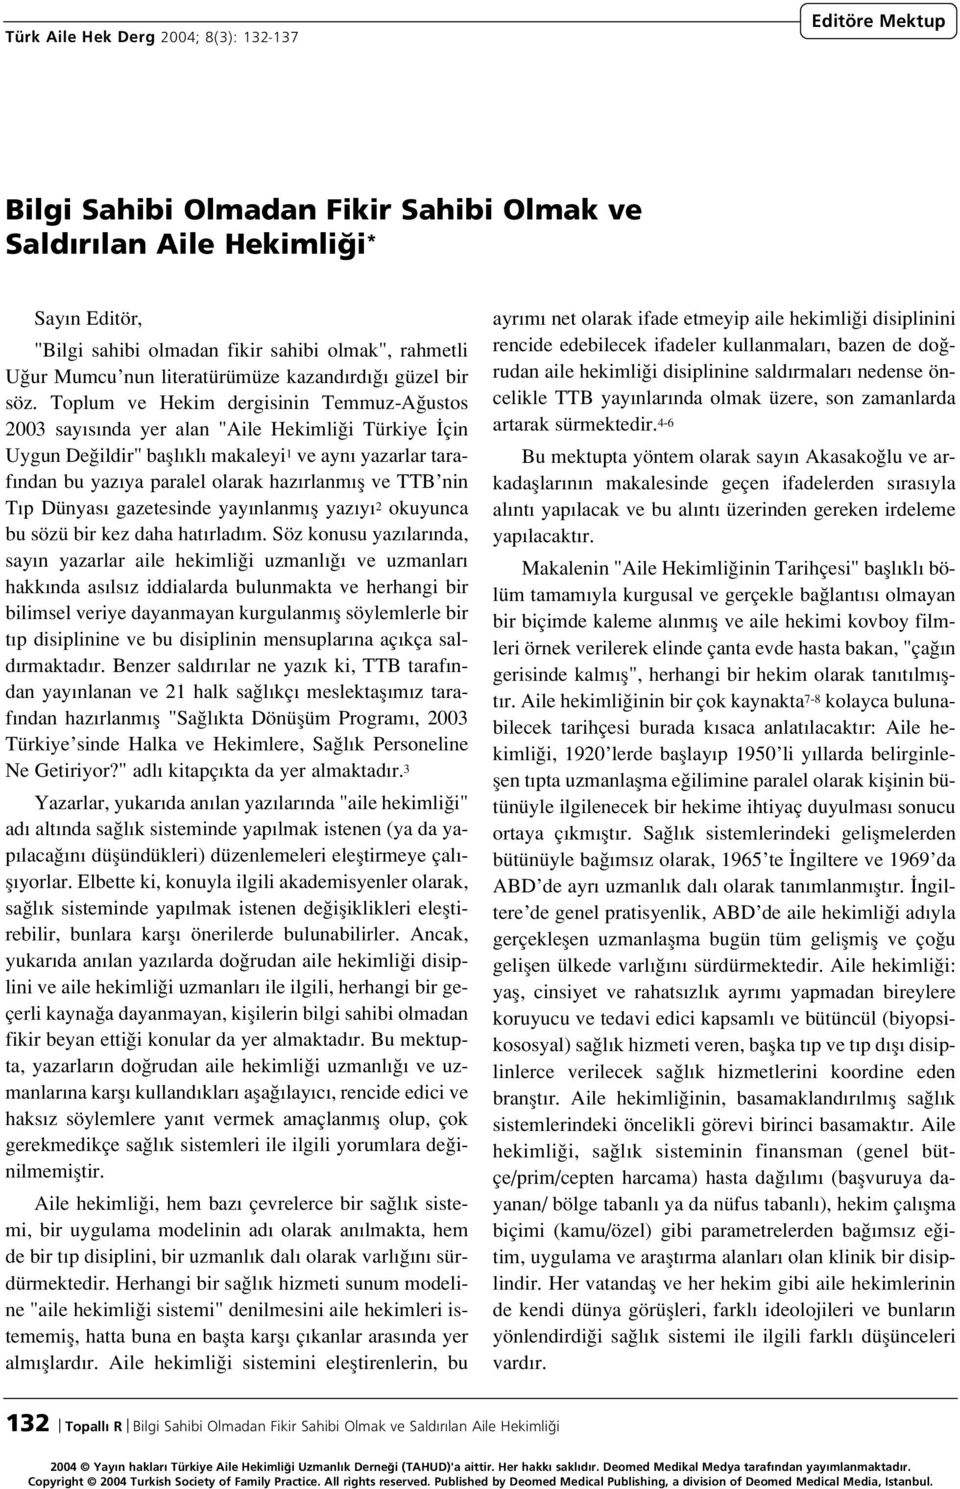 Toplum ve Hekim dergisinin Temmuz-A ustos 2003 say s nda yer alan "Aile Hekimli i Türkiye çin Uygun De ildir" bafll kl makaleyi 1 ve ayn yazarlar taraf ndan bu yaz ya paralel olarak haz rlanm fl ve